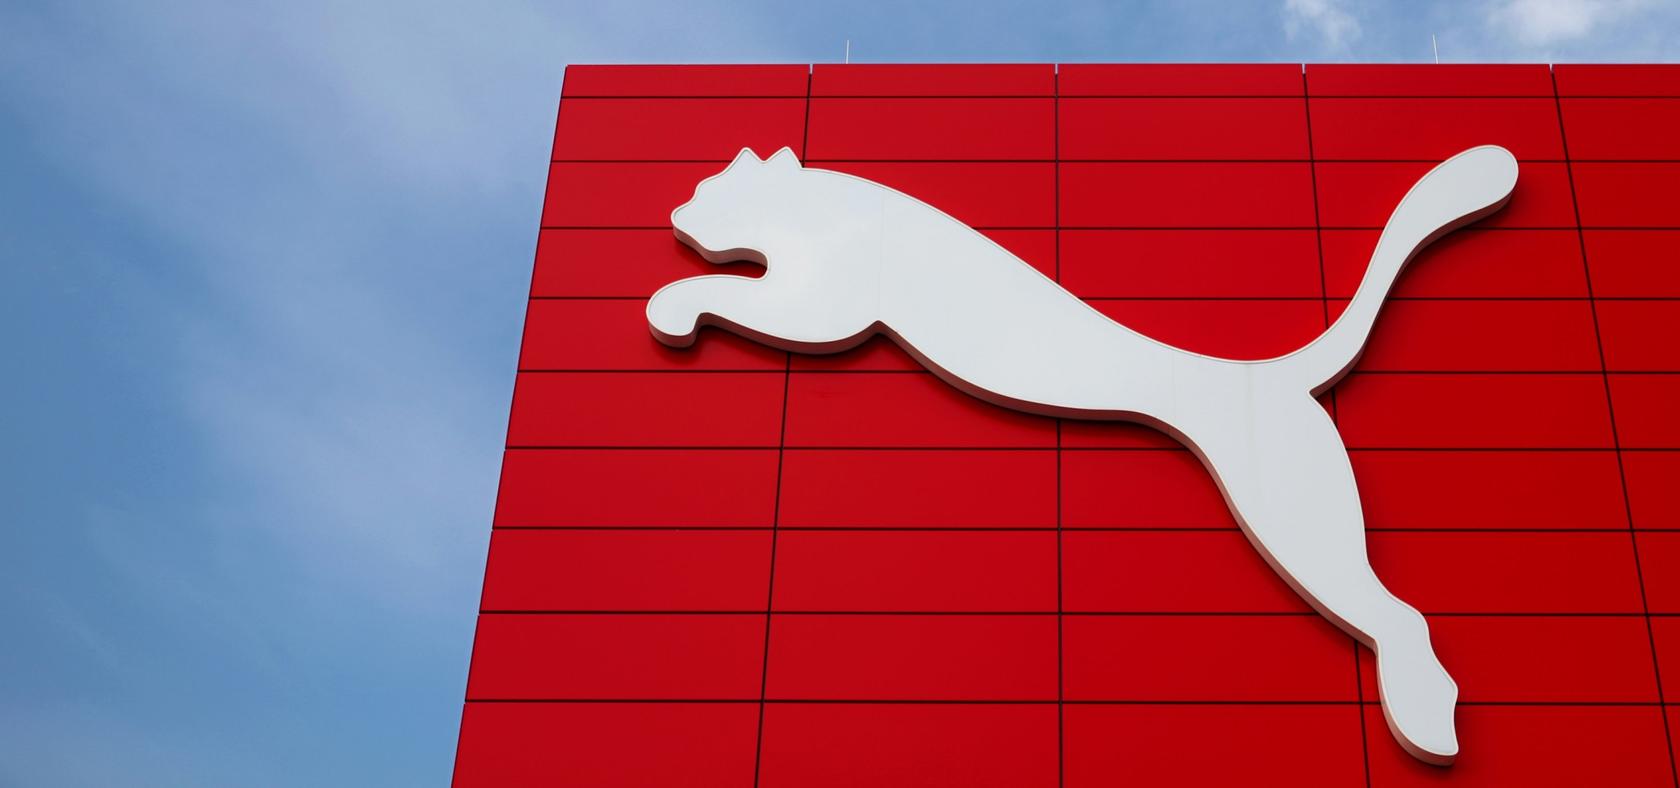 Der springende Puma ziert inzwischen Millionen von Sportartikeln. Am 10. Januar 2018 wird das Logo bereits 50 Jahre alt.